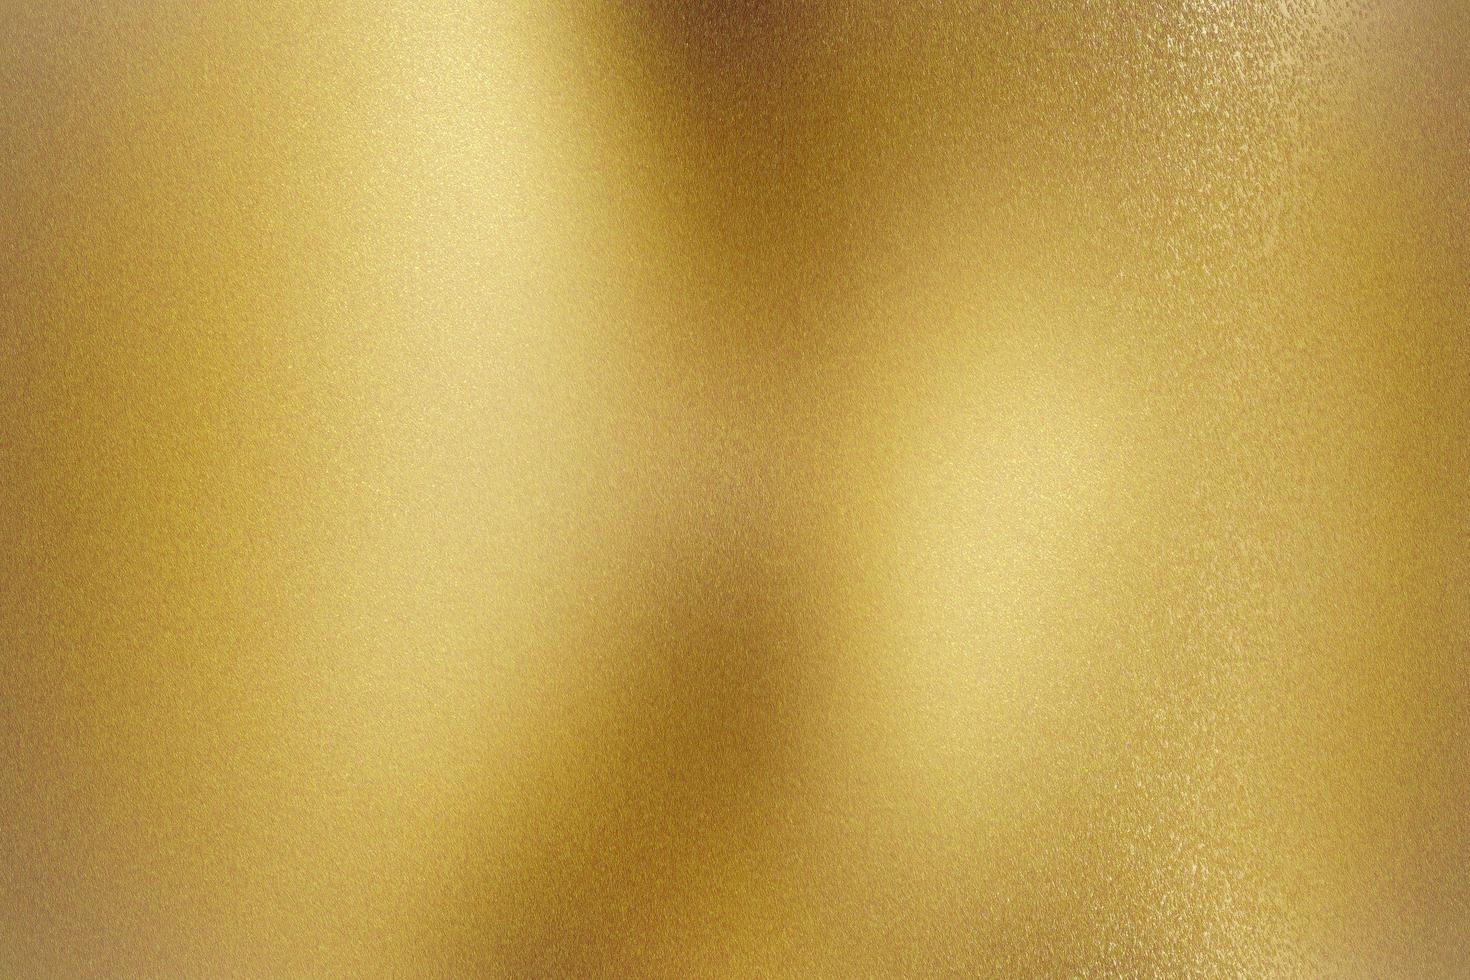 pared metálica dorada cepillada con superficie rayada, fondo de textura abstracta foto